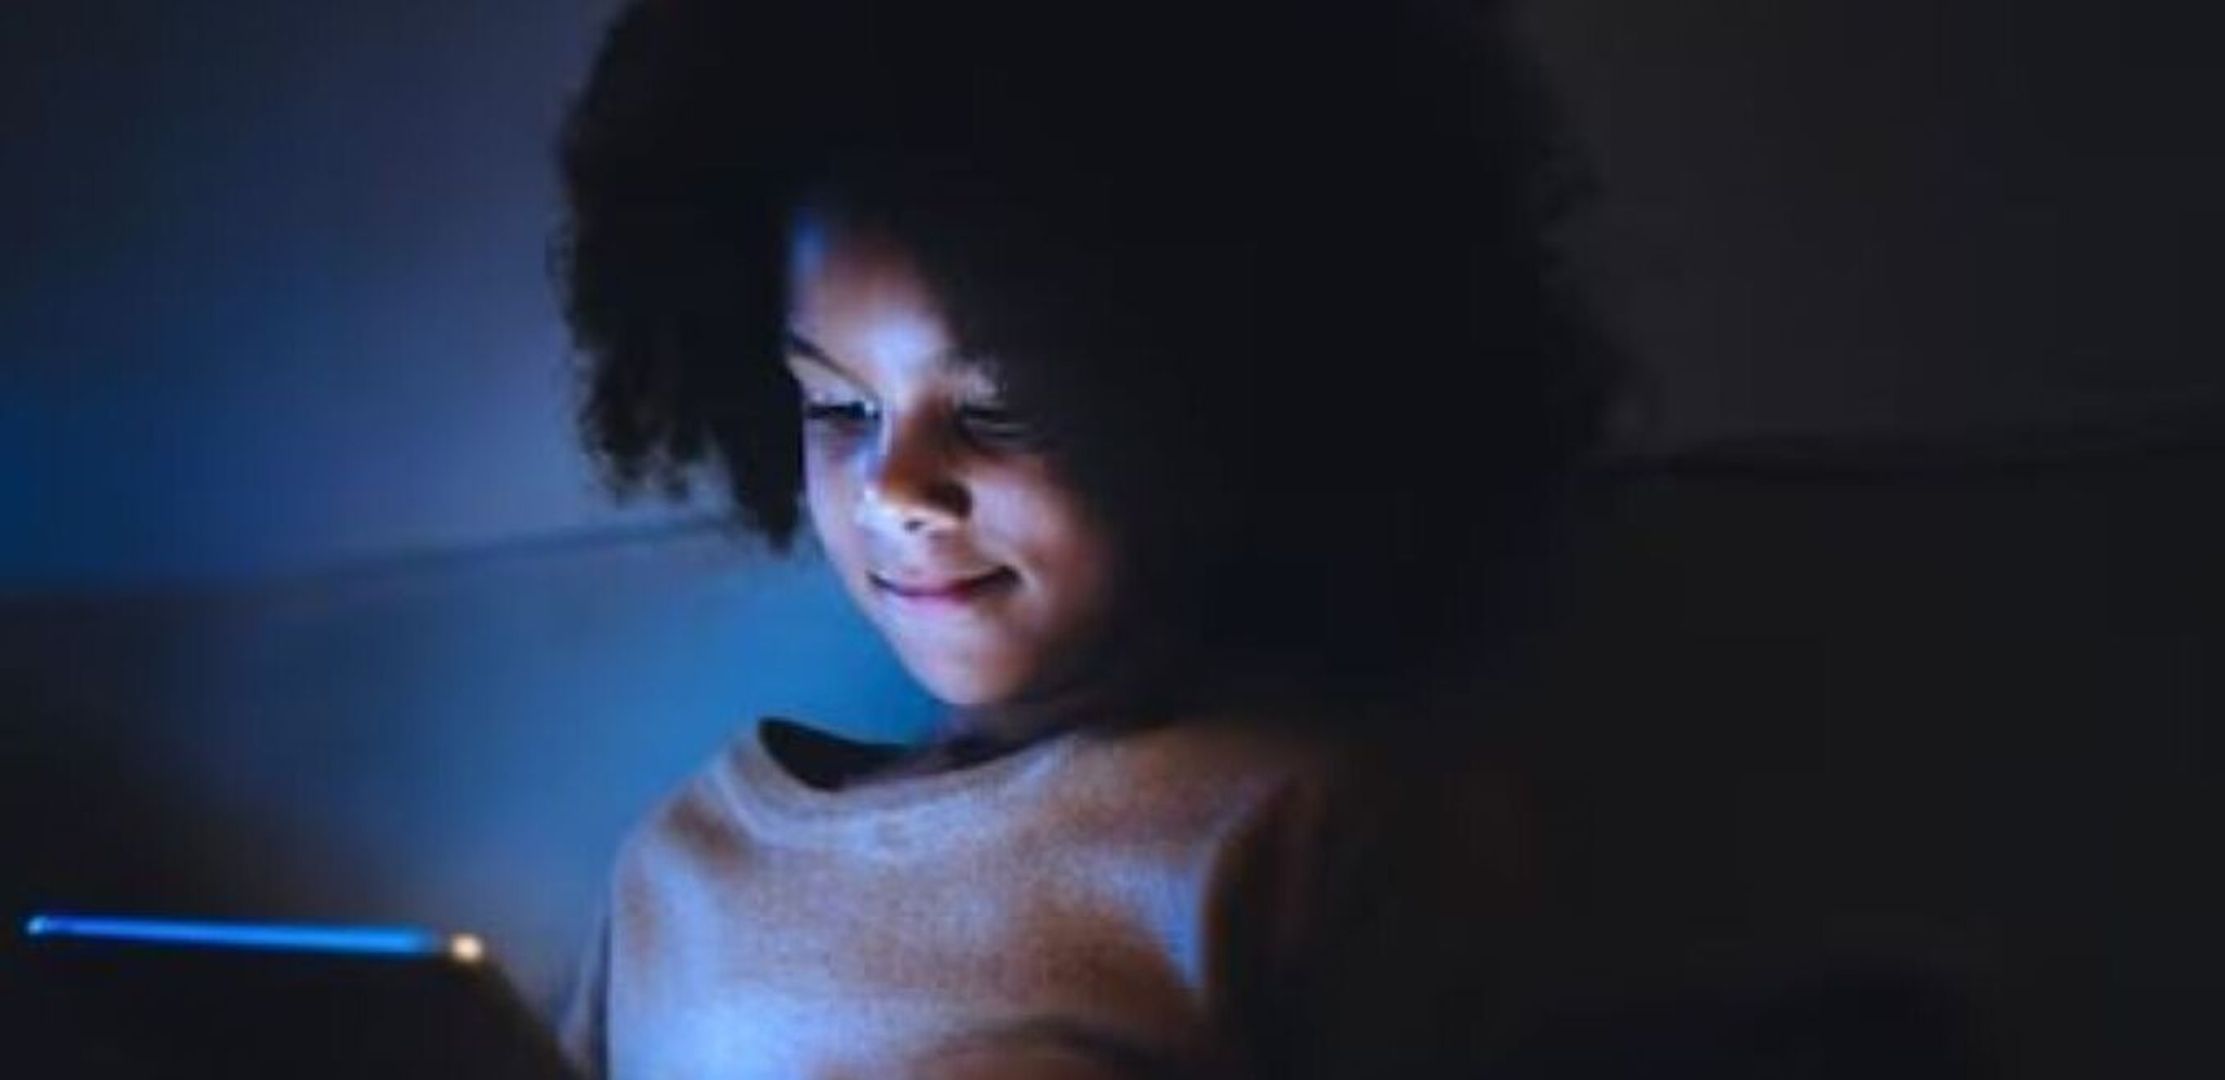 Redes sociais têm ‘risco profundo de danos’ para crianças, diz autoridade de saúde dos EUA